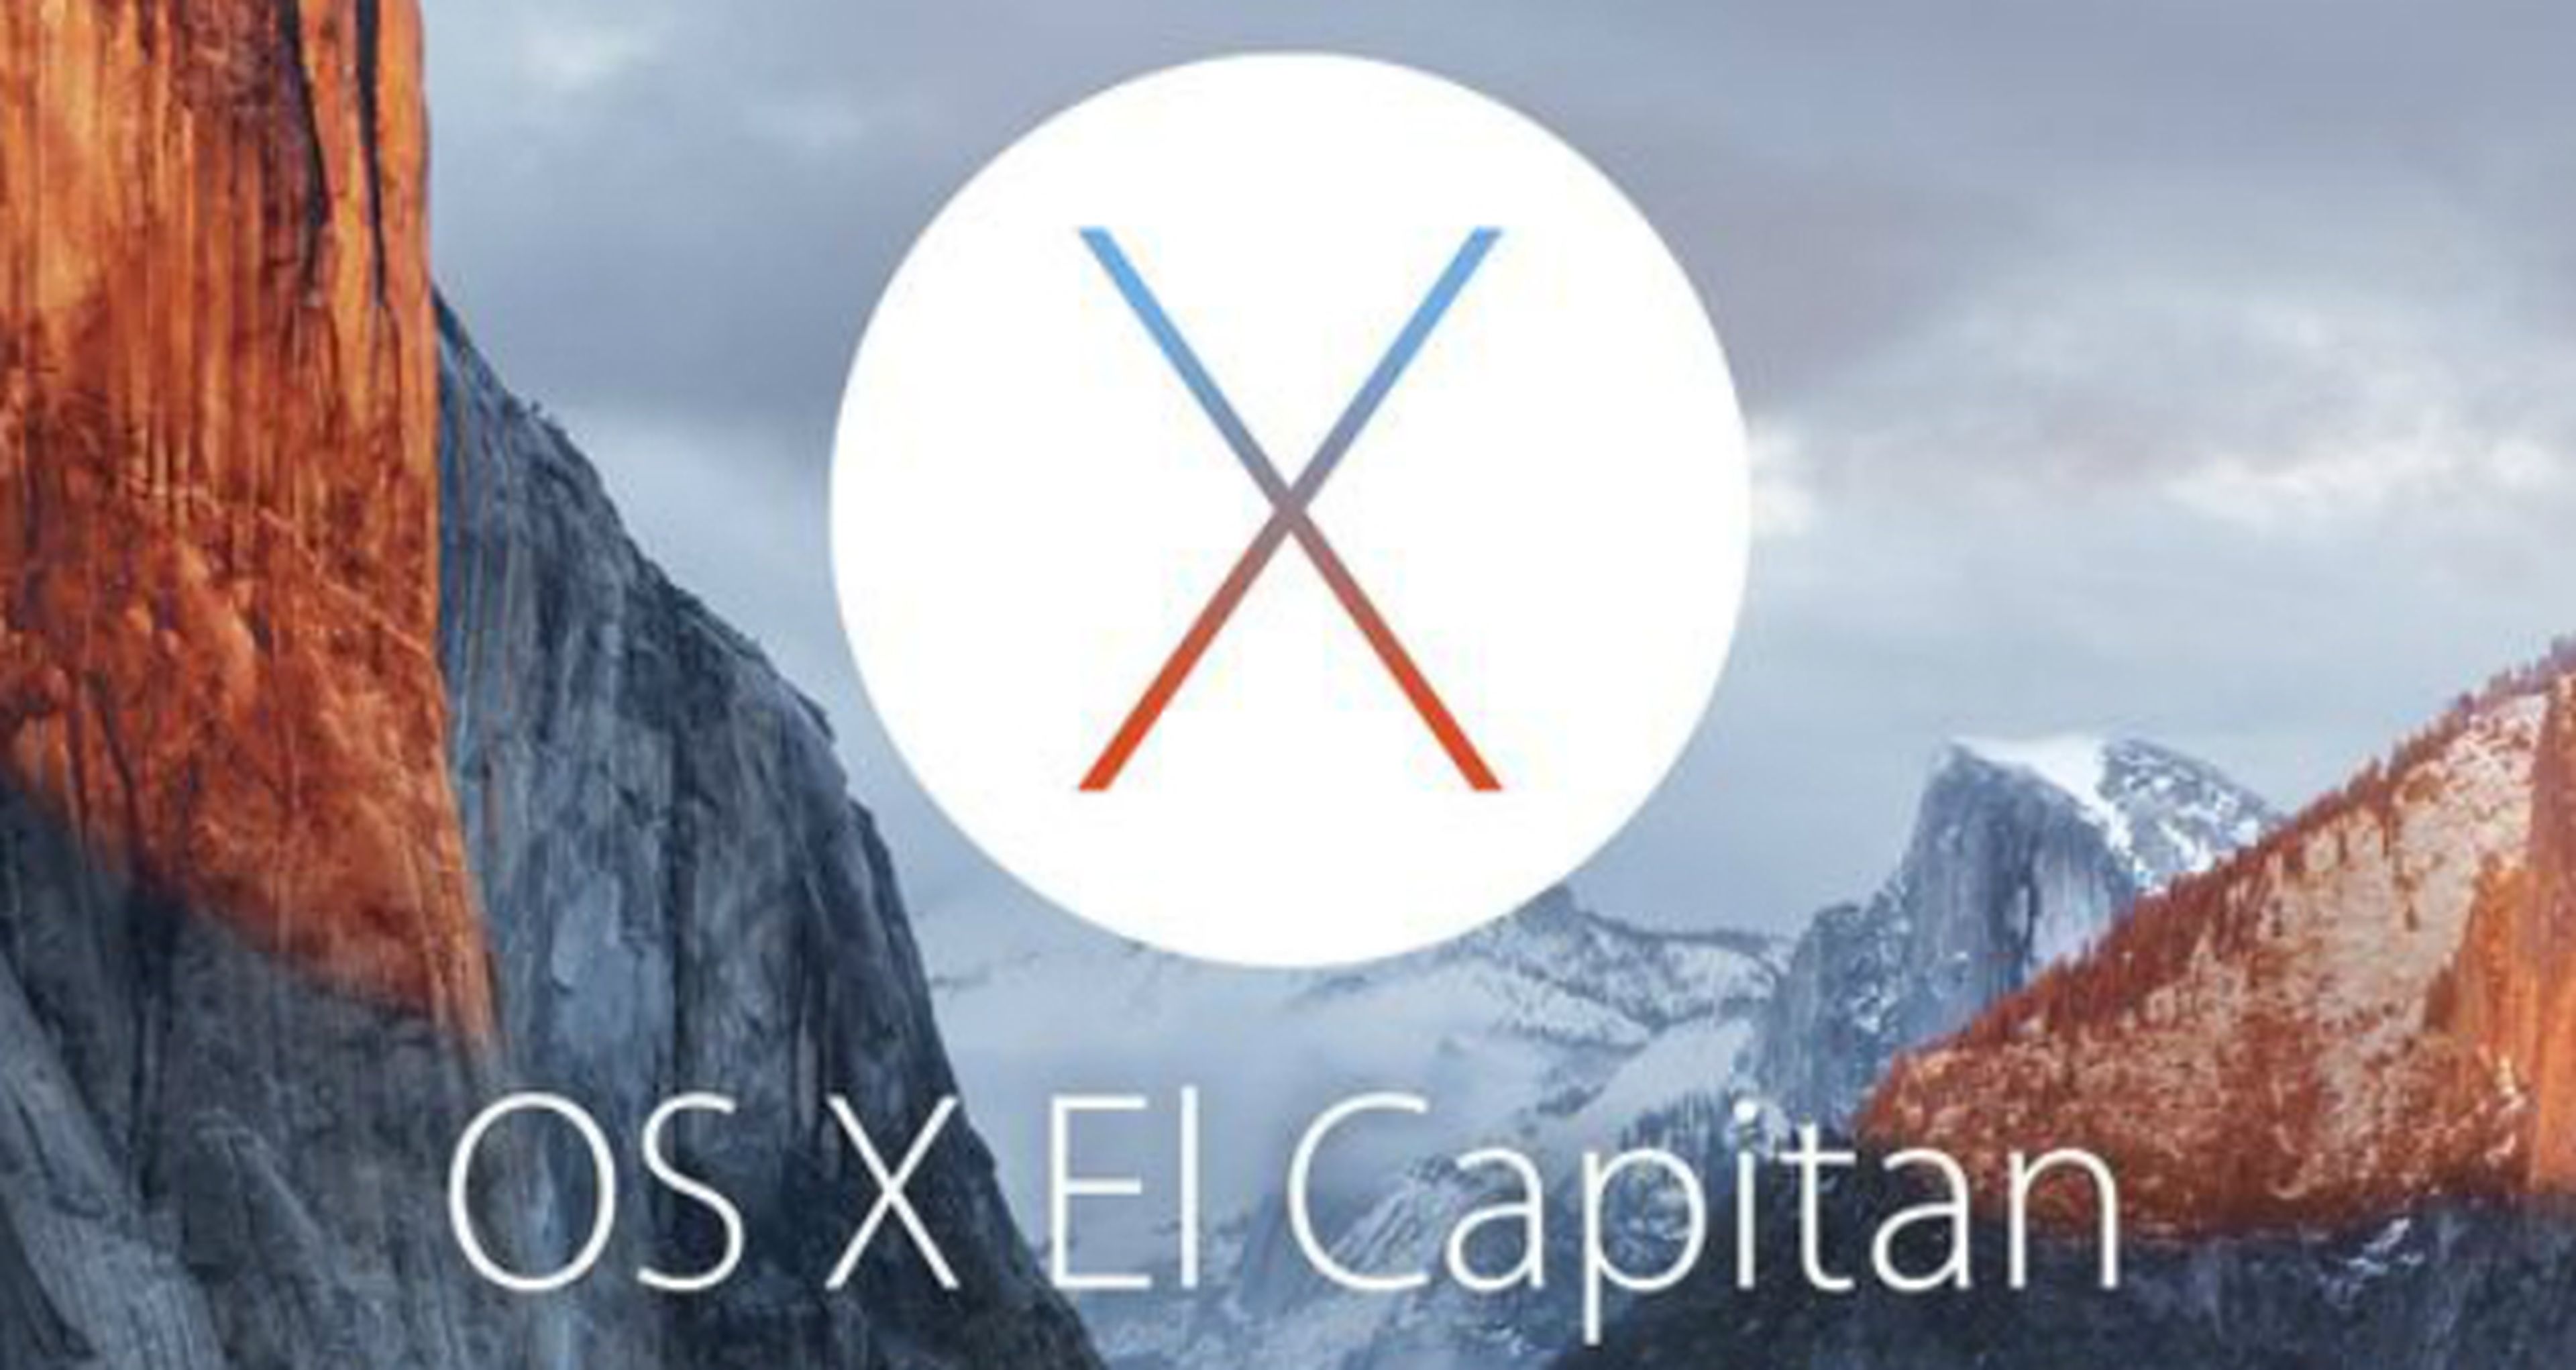 Apple anuncia iOS 9 y OS X El Capitán